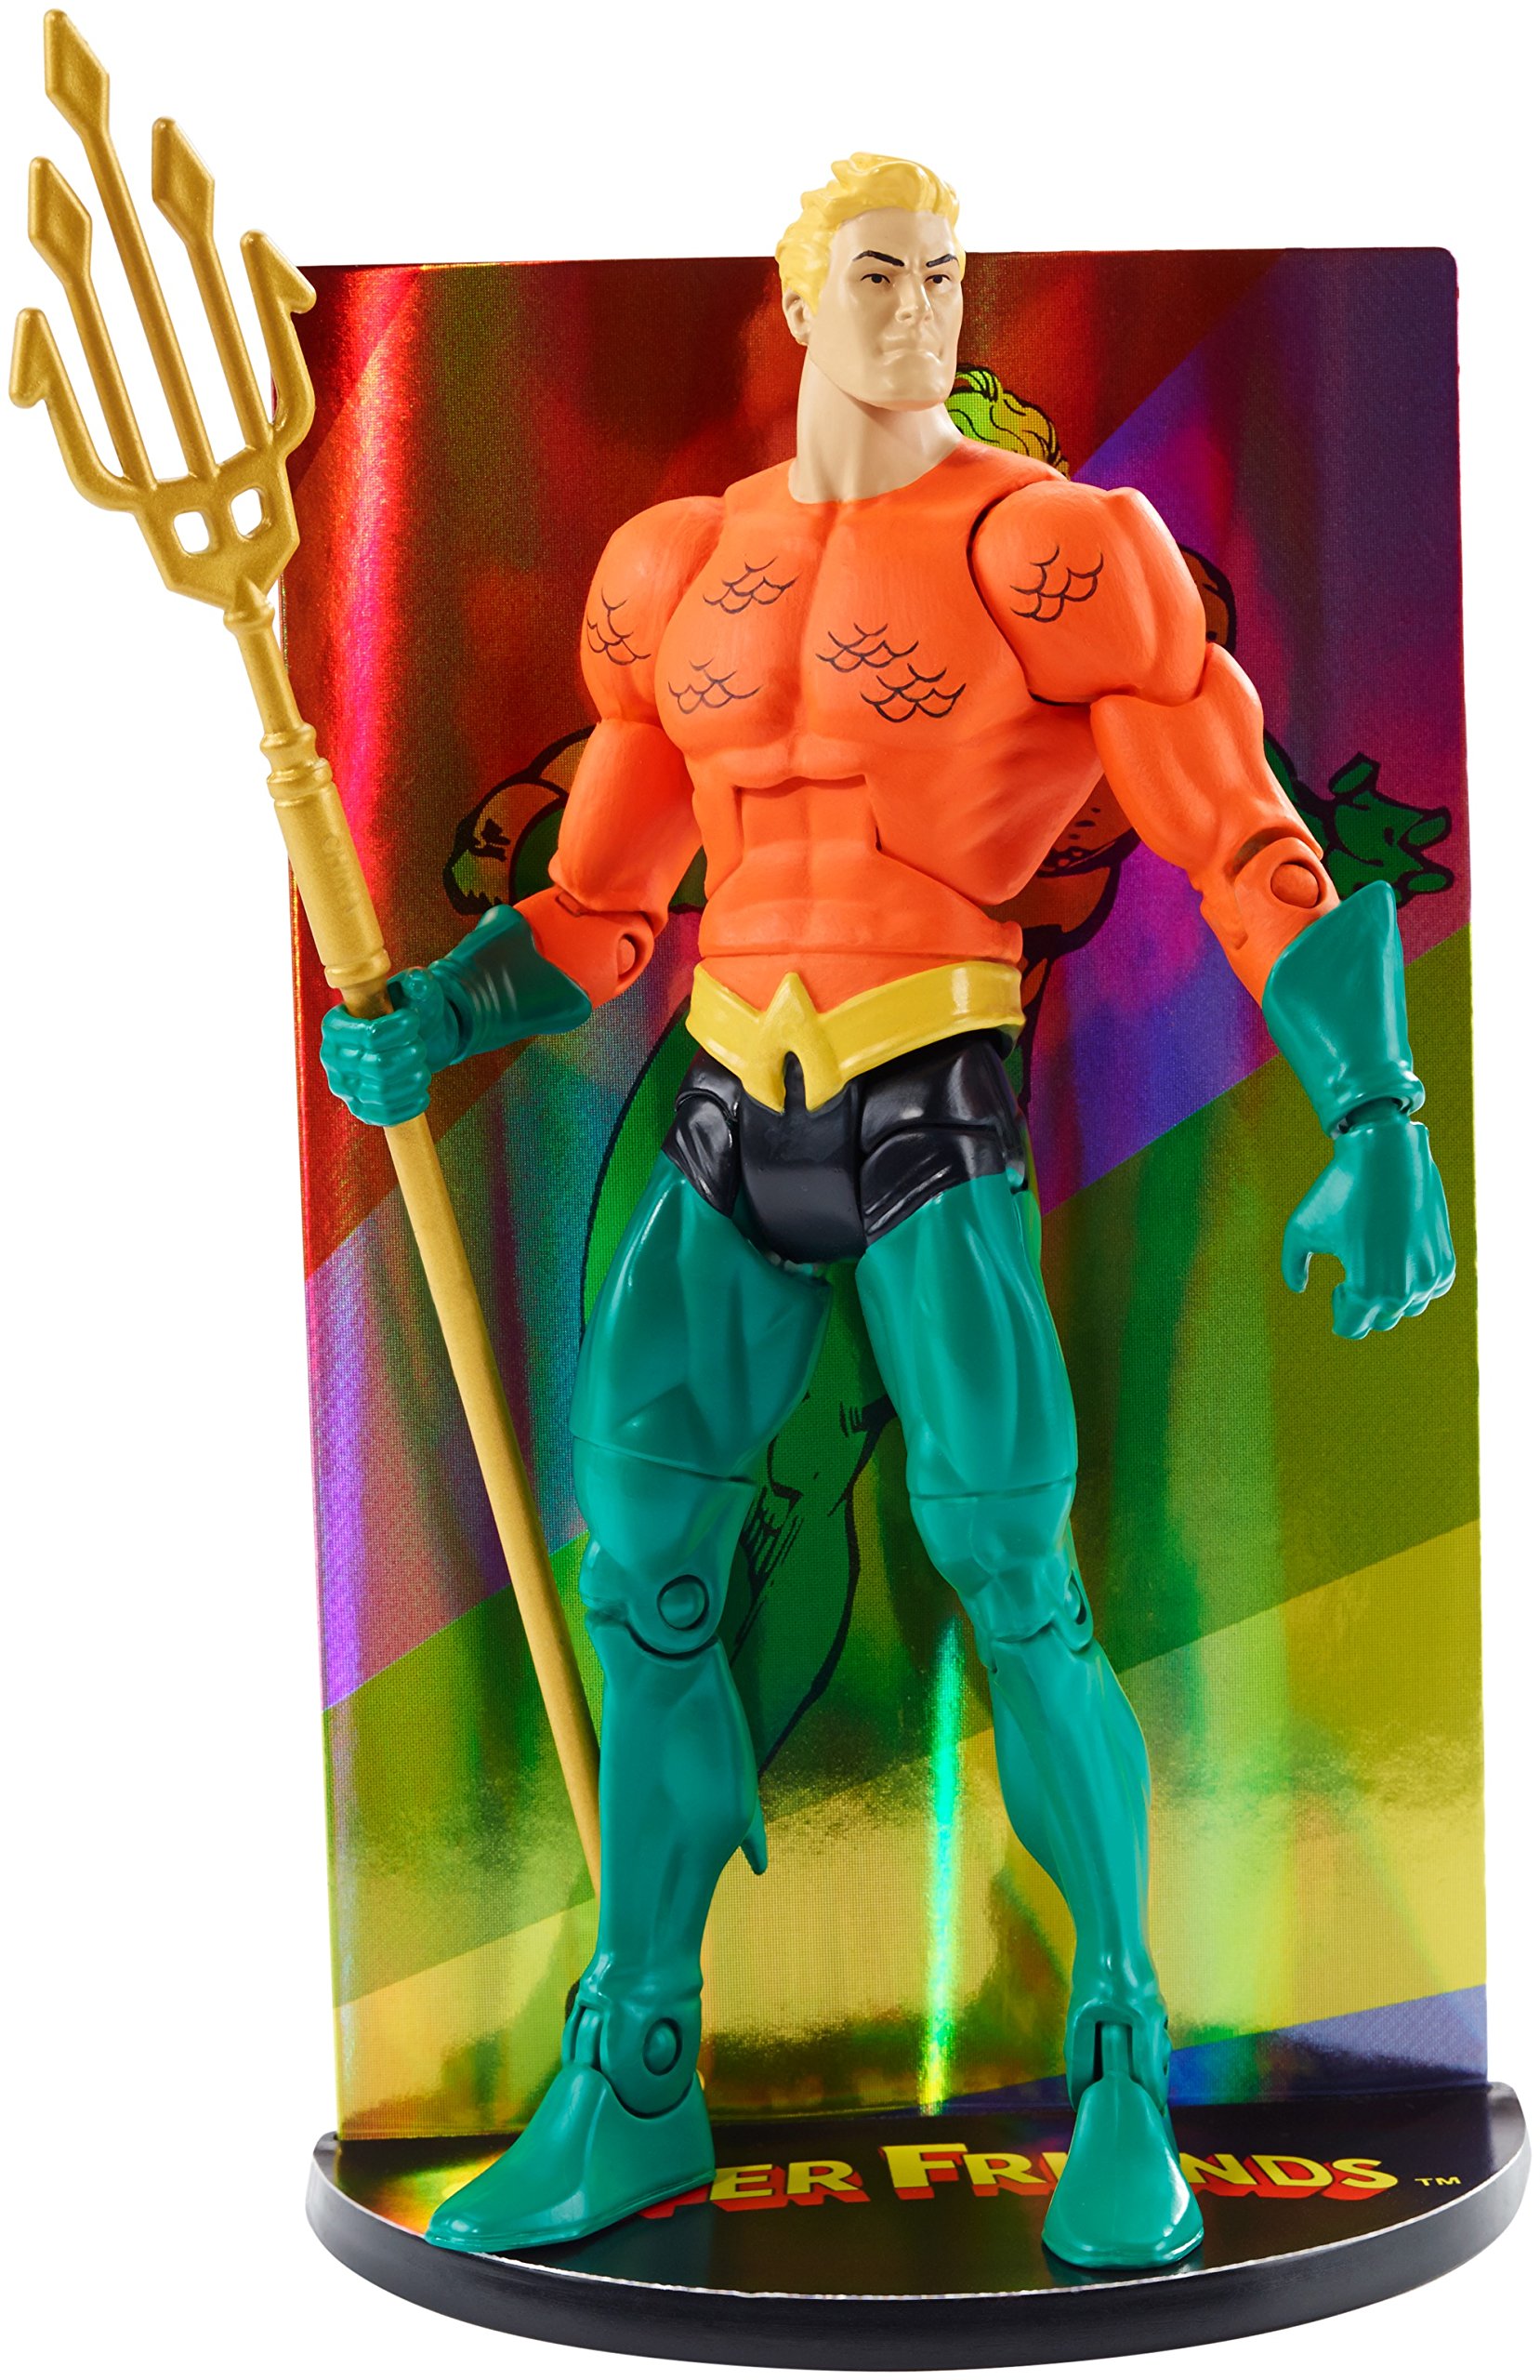 DC Super Friends Super Friend Multiverse Super Friends Aquaman Figure